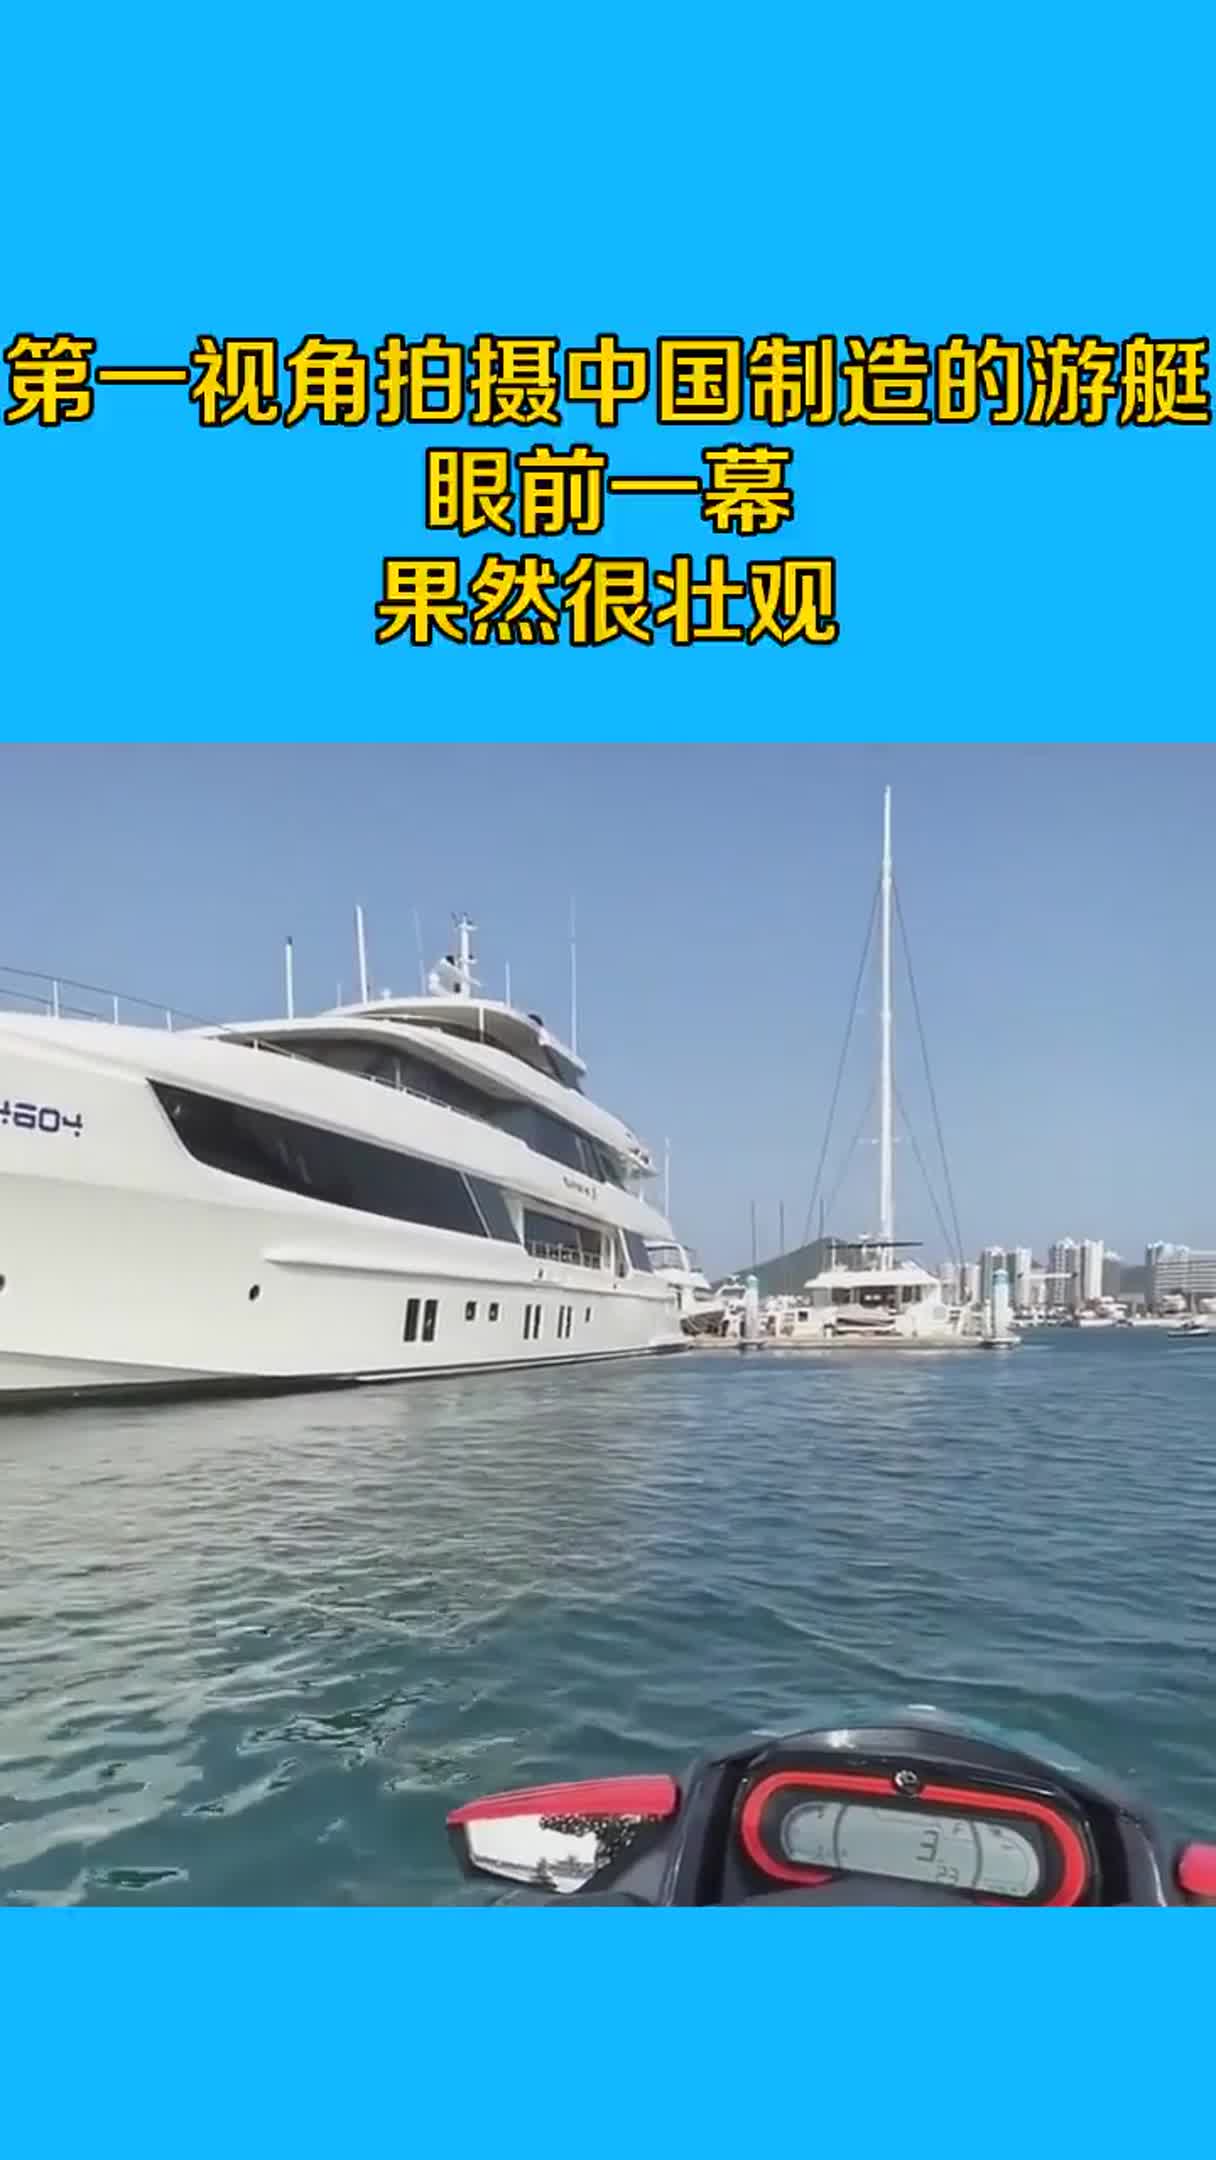 第一视角拍摄，中国制造的游艇，眼前一幕果然很壮观